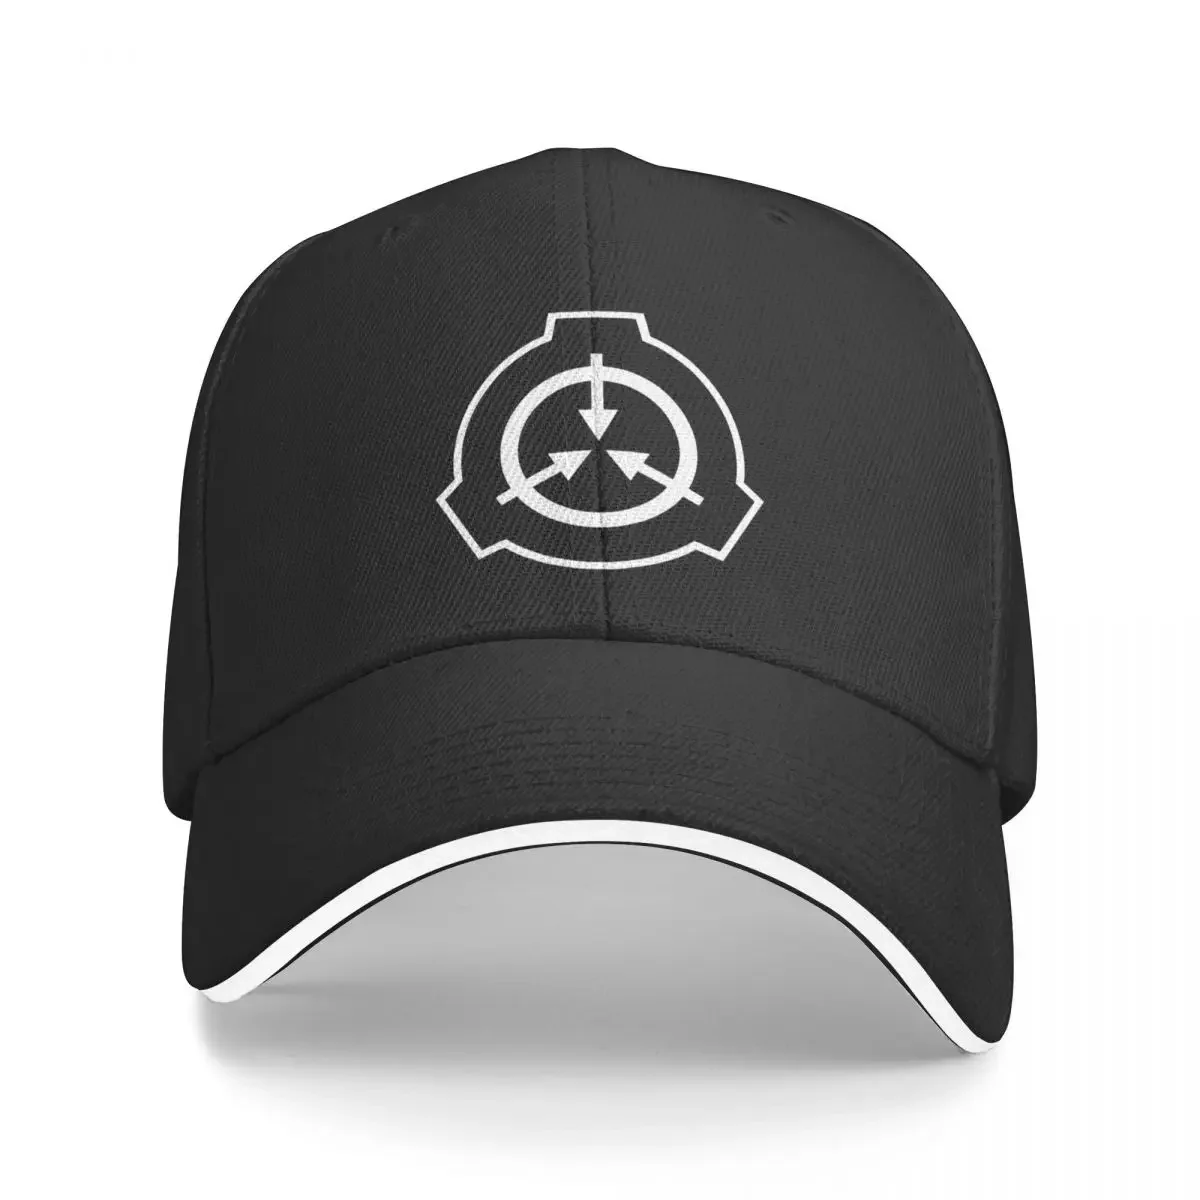 

Бейсбольная кепка с логотипом SCP Foundation, Женская пляжная кепка, шляпа для рыбалки, для мальчиков и детей